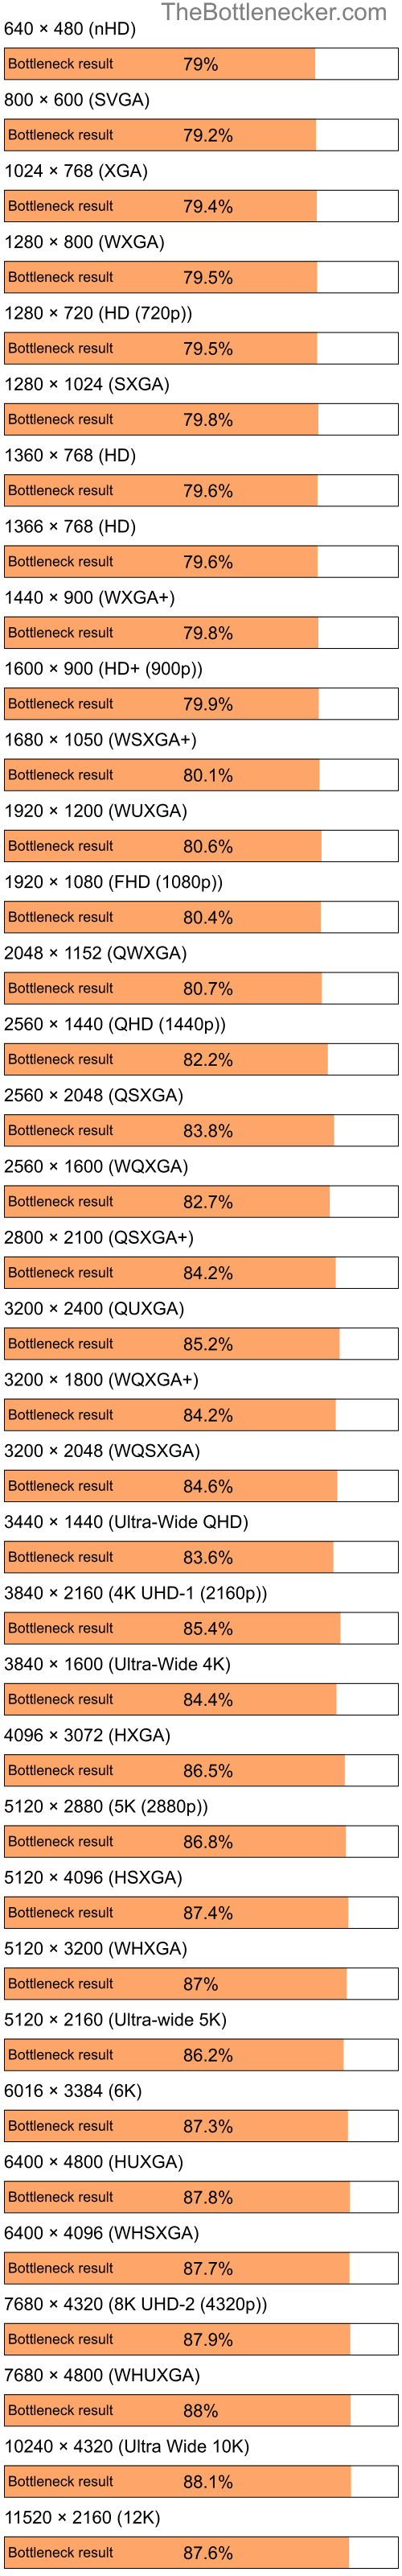 Bottleneck results by resolution for Intel Celeron M and NVIDIA GeForce 6100 nForce 400 in General Tasks